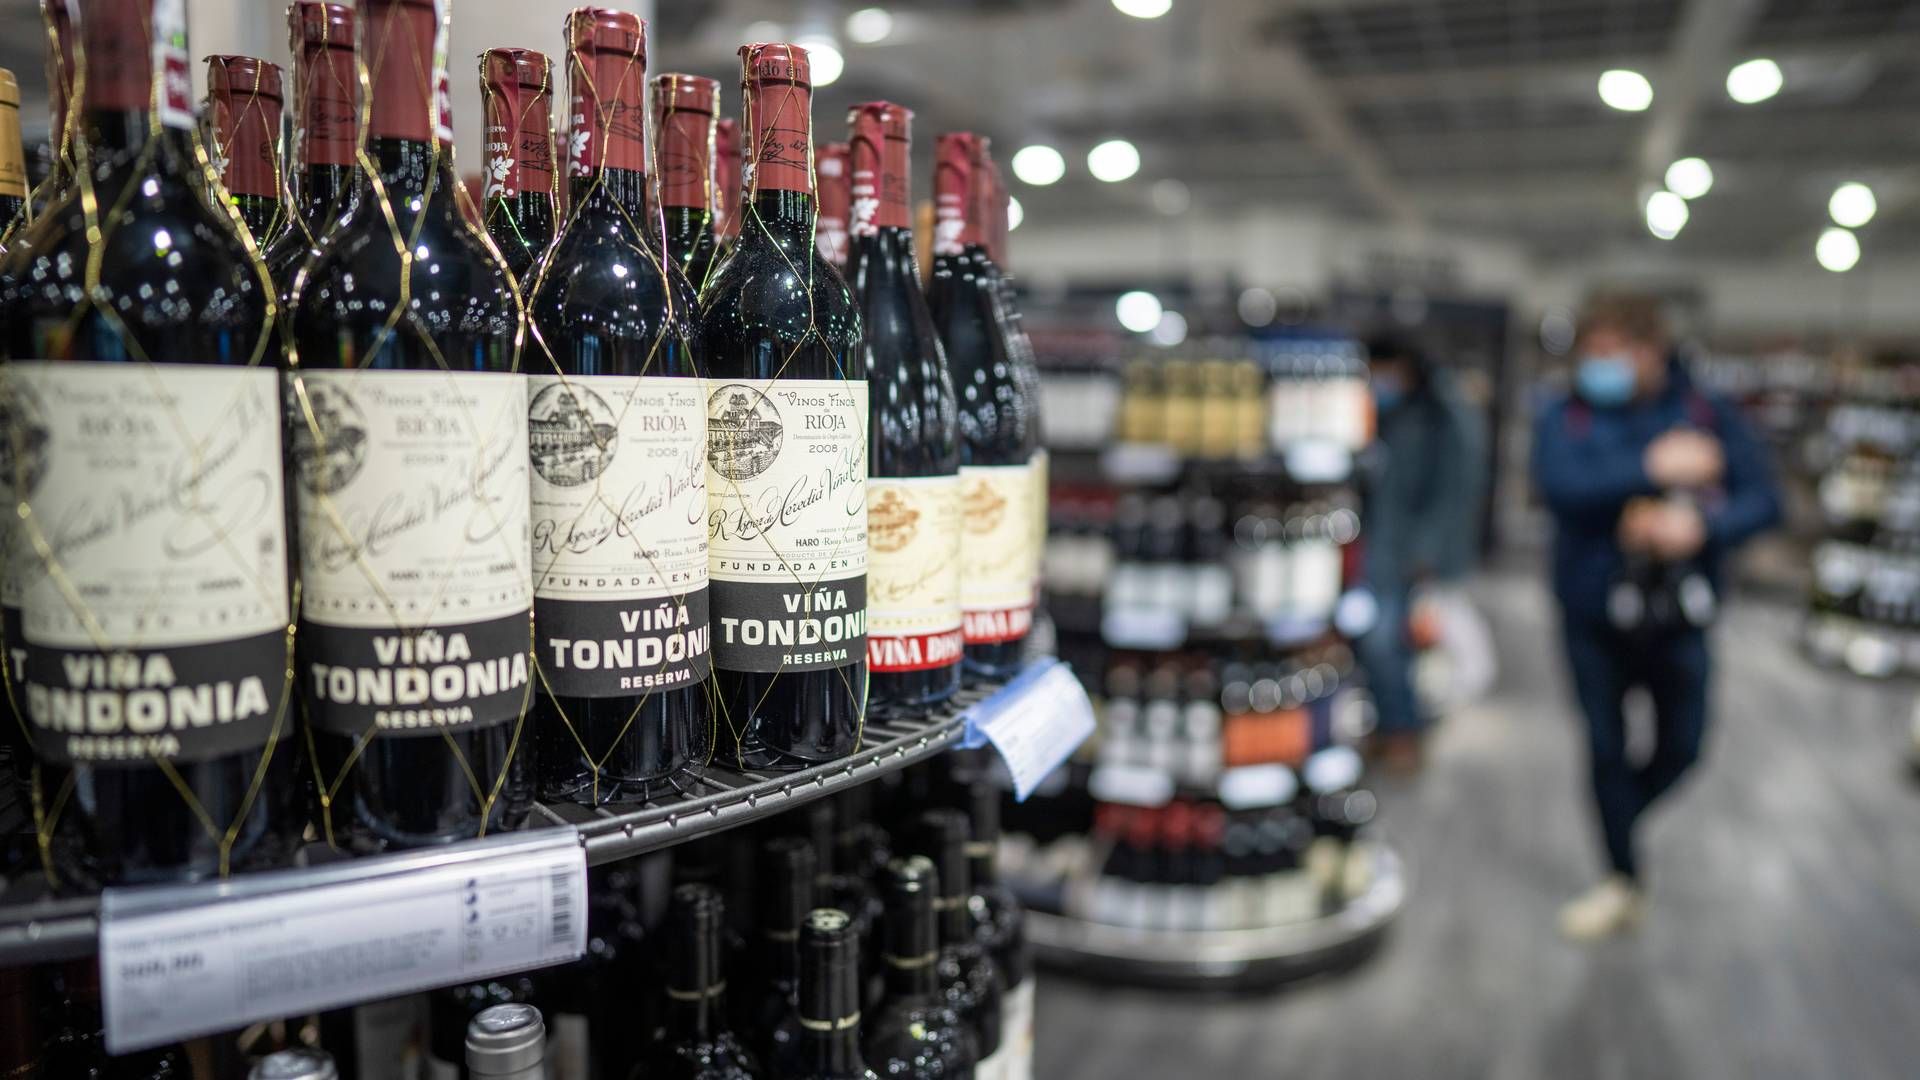 SALG: Vinmonopolet selger mye av både alkohol og alkoholfri drikke til jul. | Foto: Heiko Junge / NTB scanpix